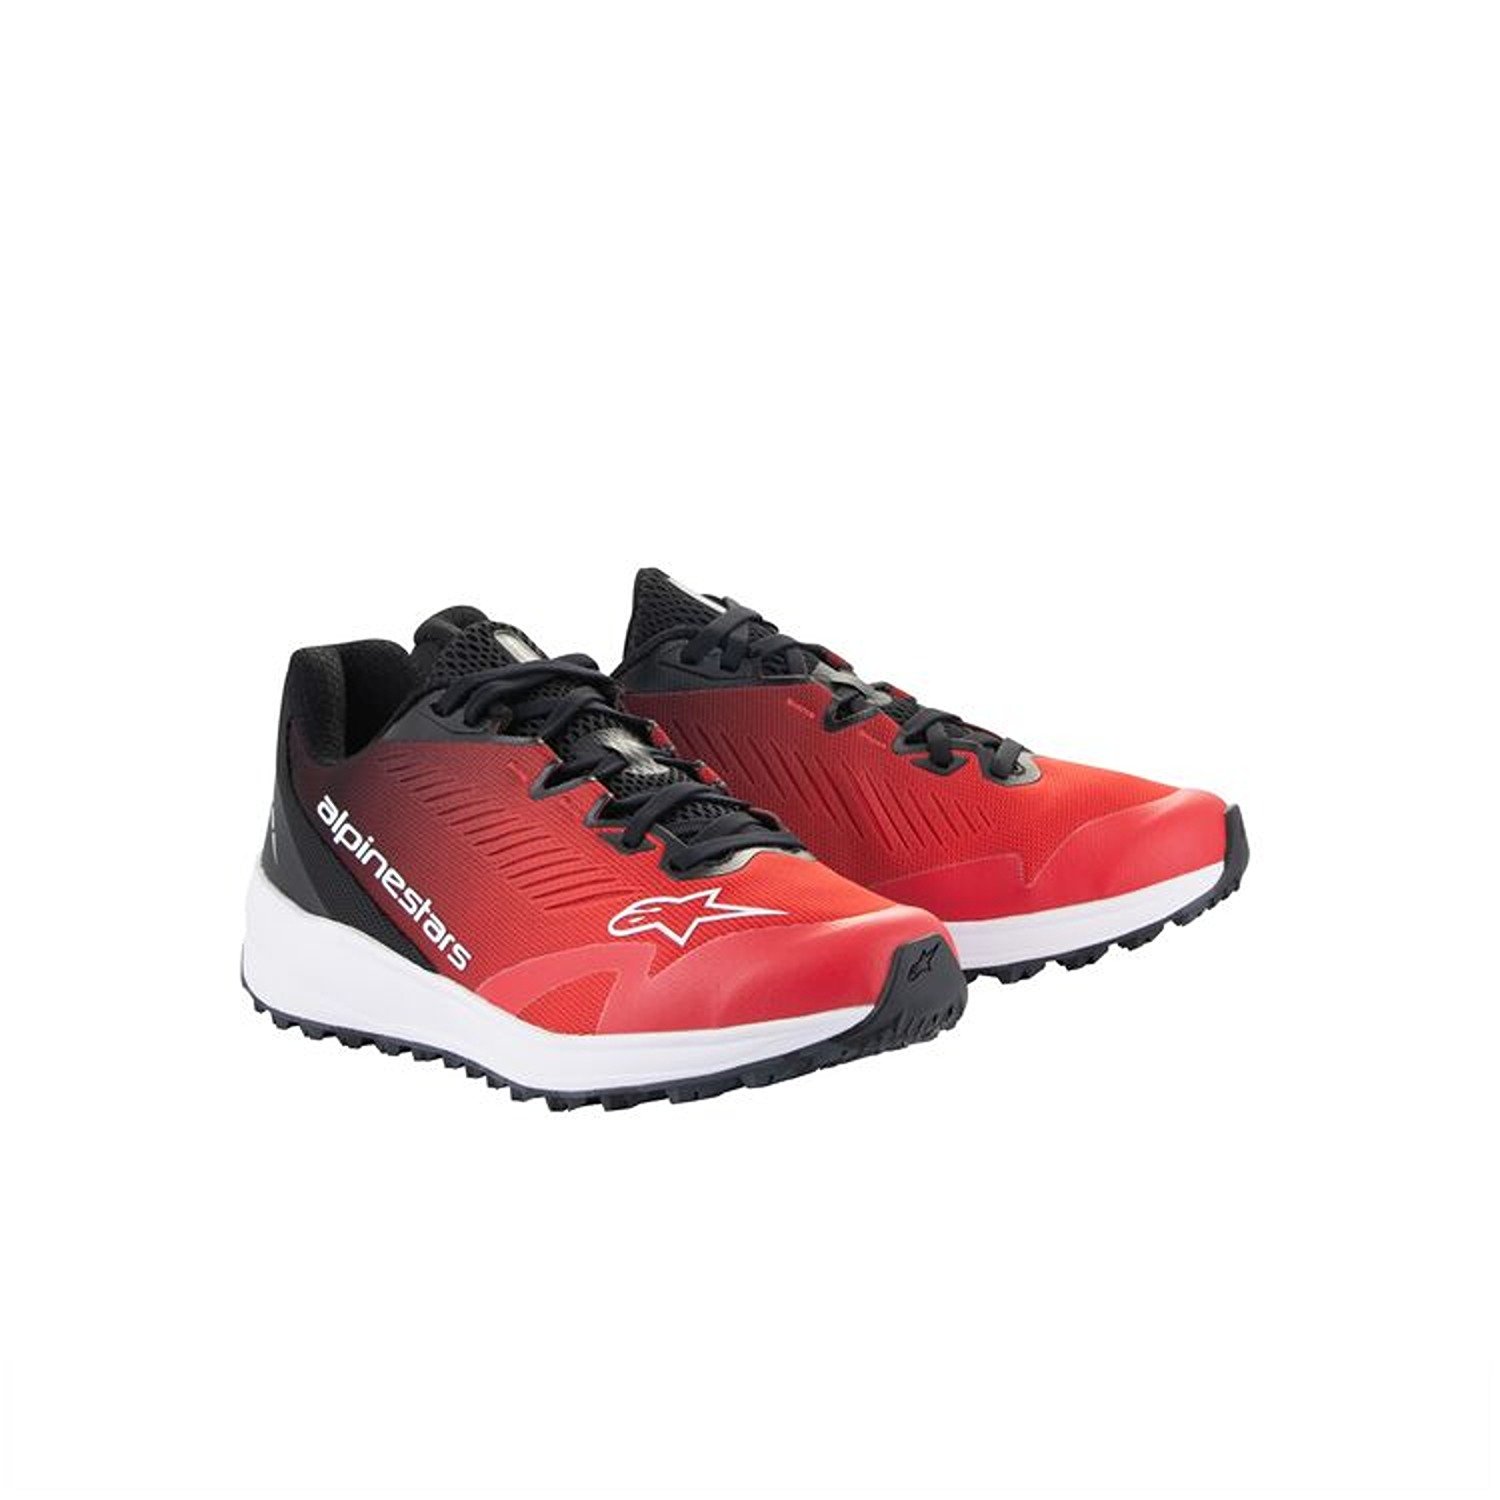 Image of Alpinestars Meta Road V2 Shoes Red Black White Größe US 9